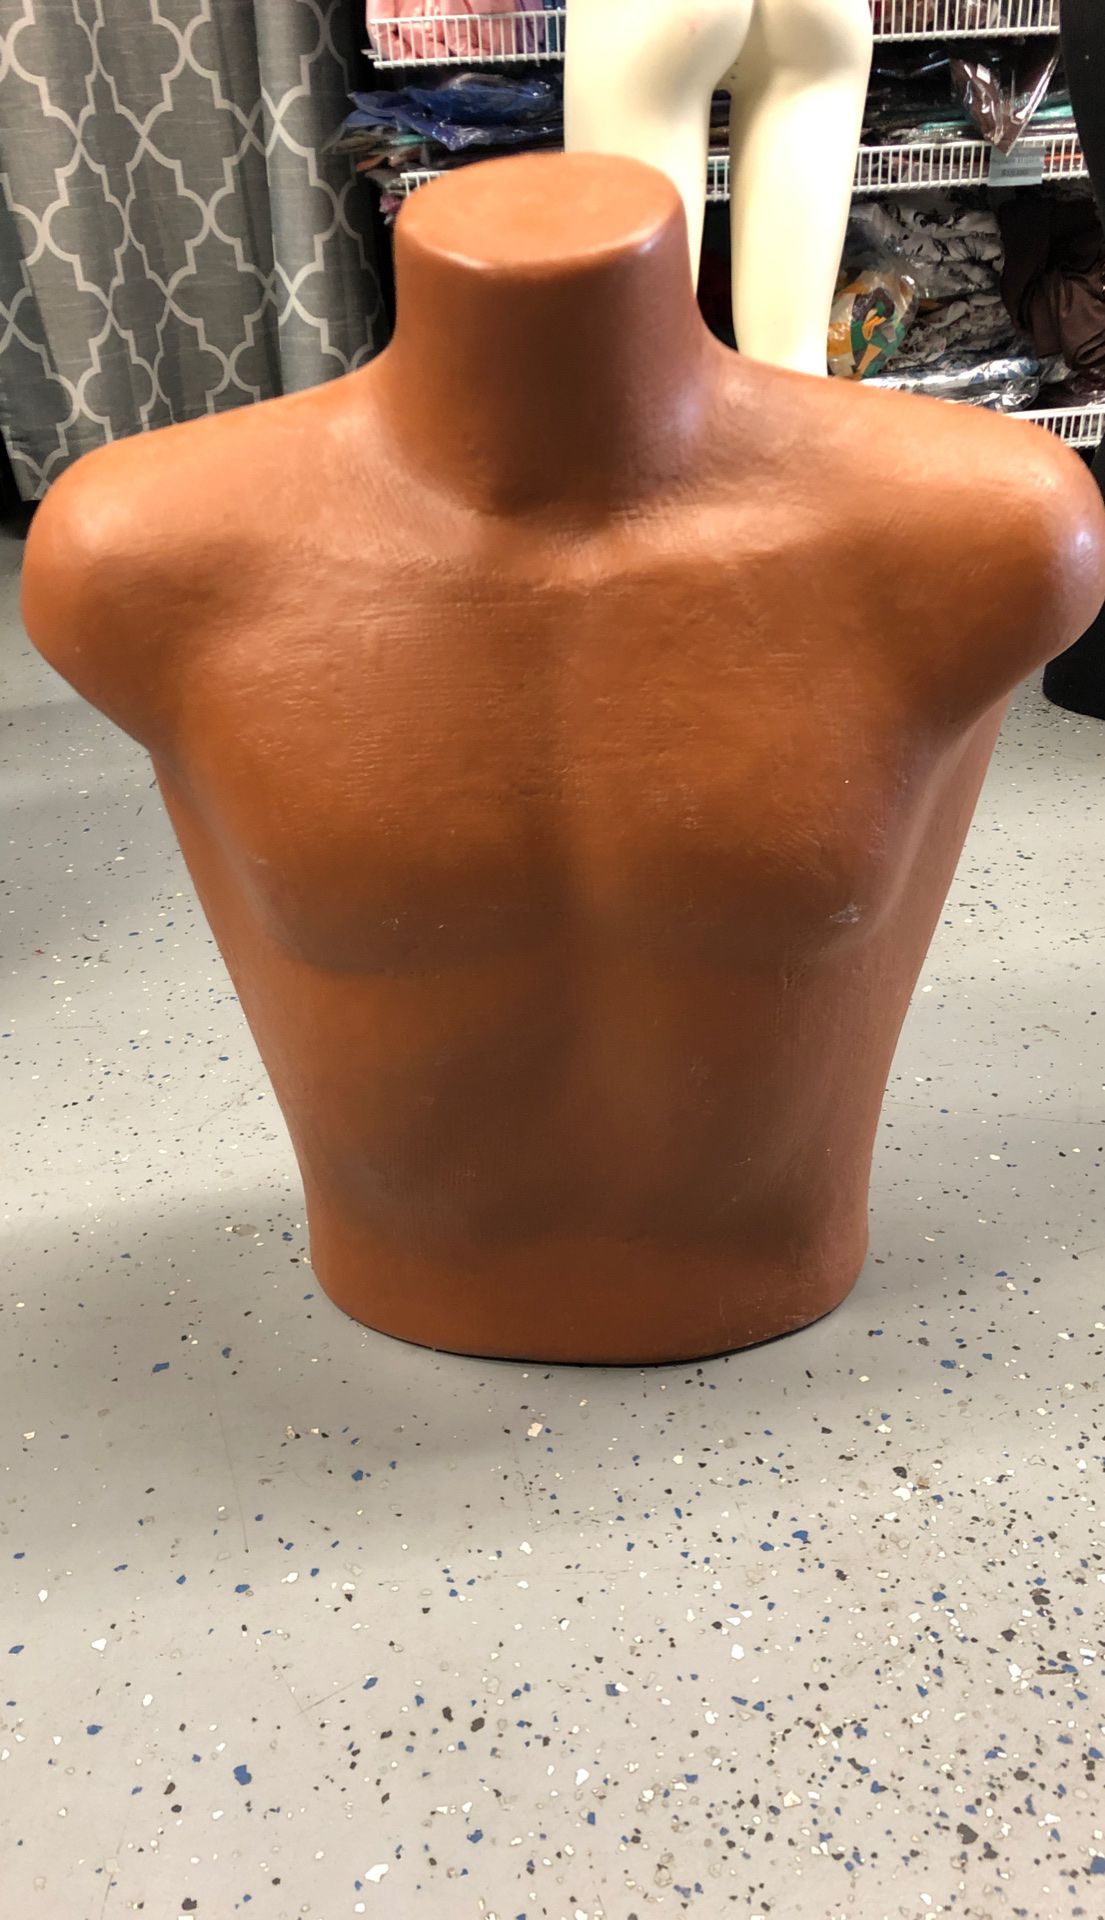 Mannequin men’s torso